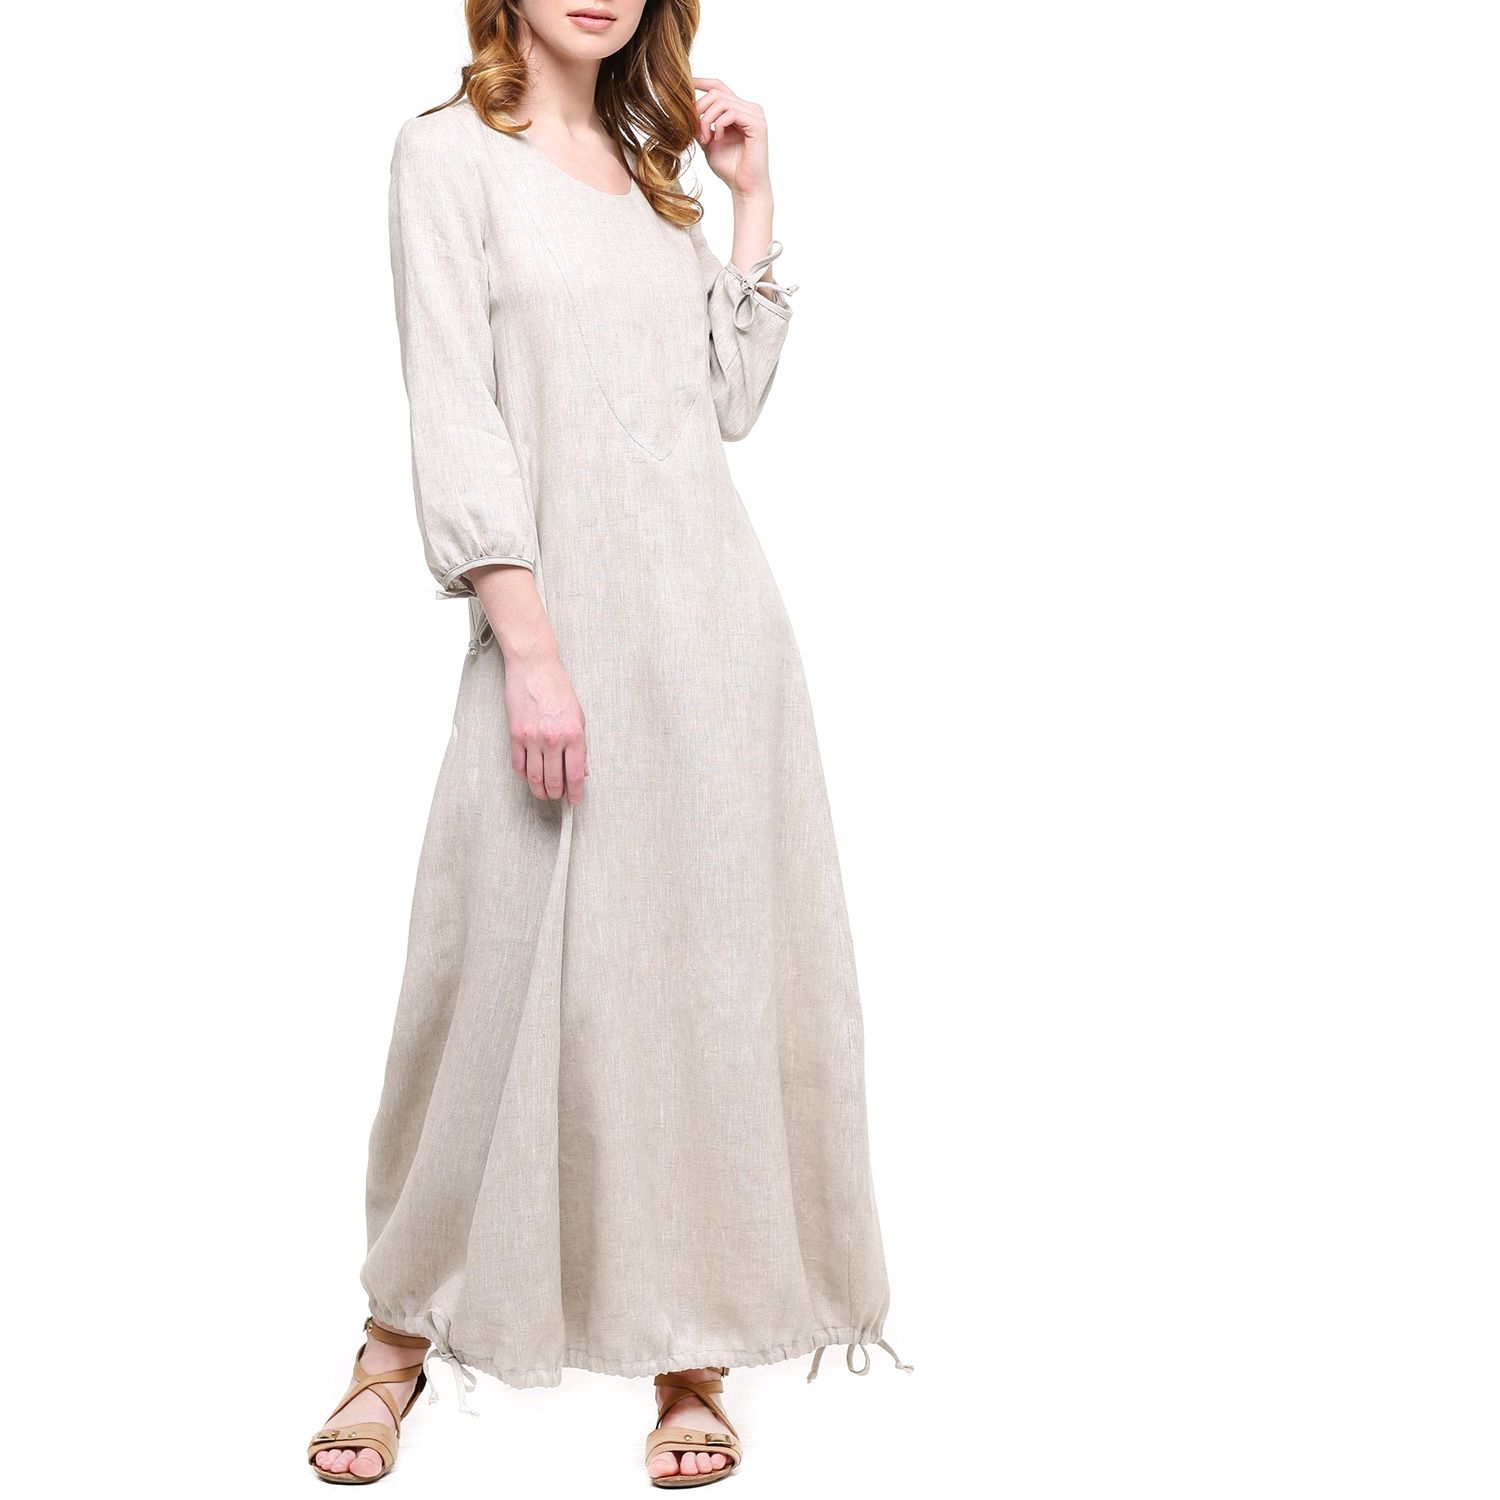 Бохо платье из льна с контрастной вышивкой